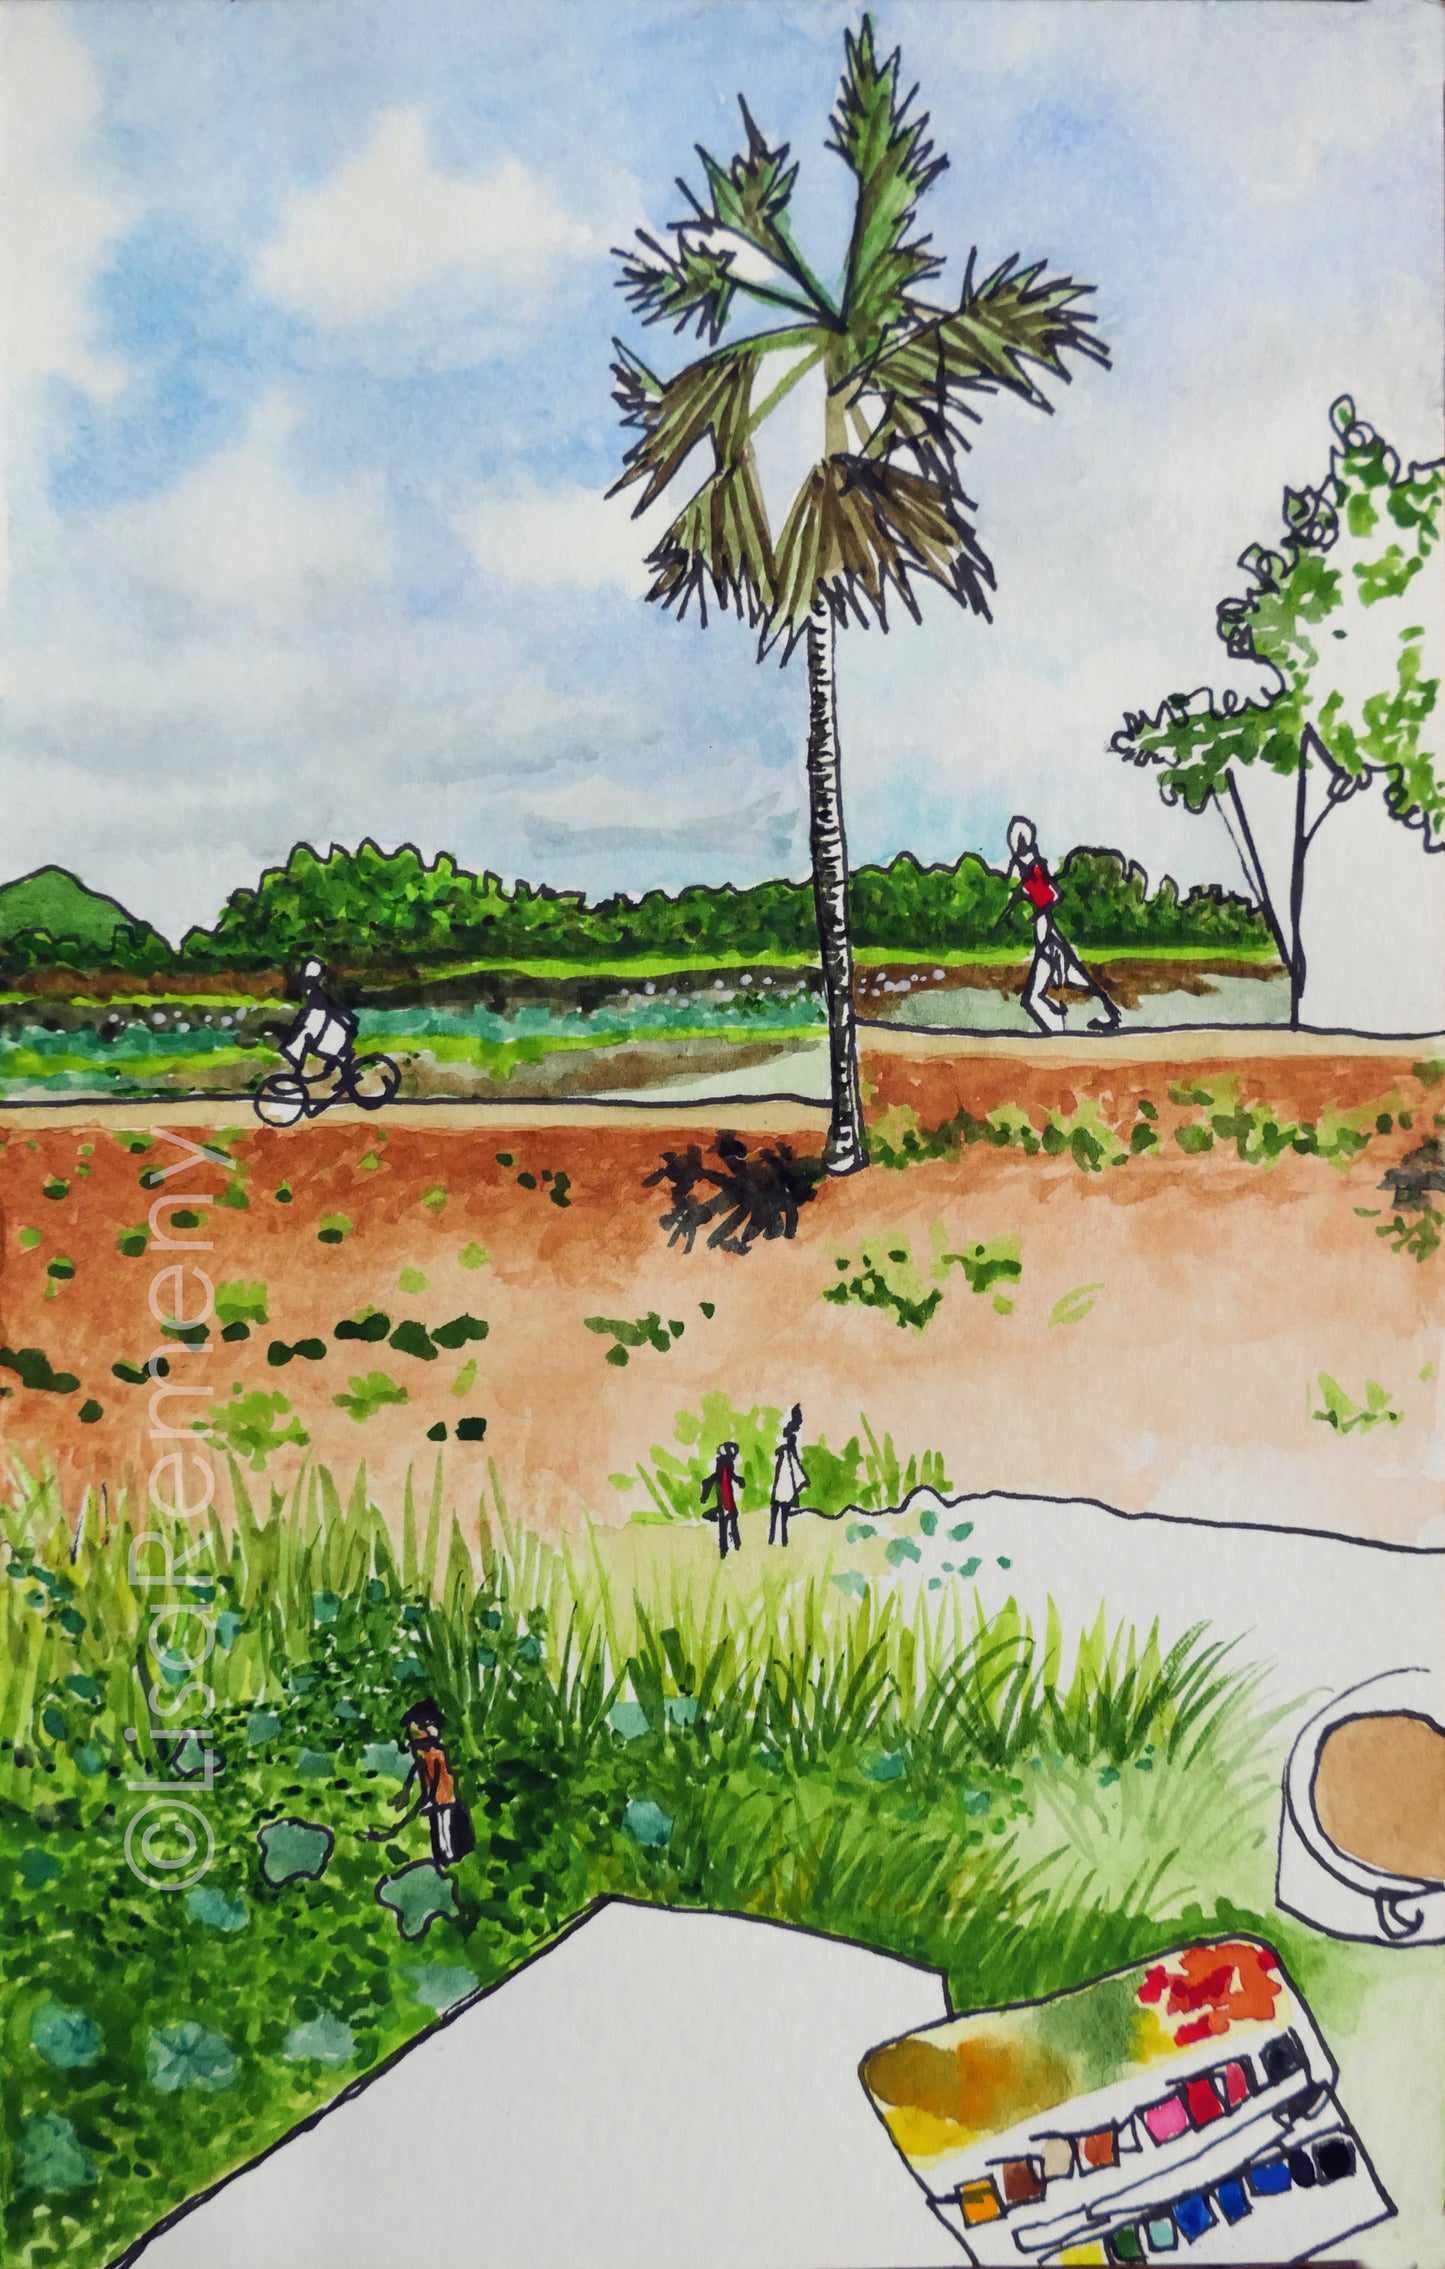 Watercolor + Ink on Paper - Lotus Fields in Sri Lanka